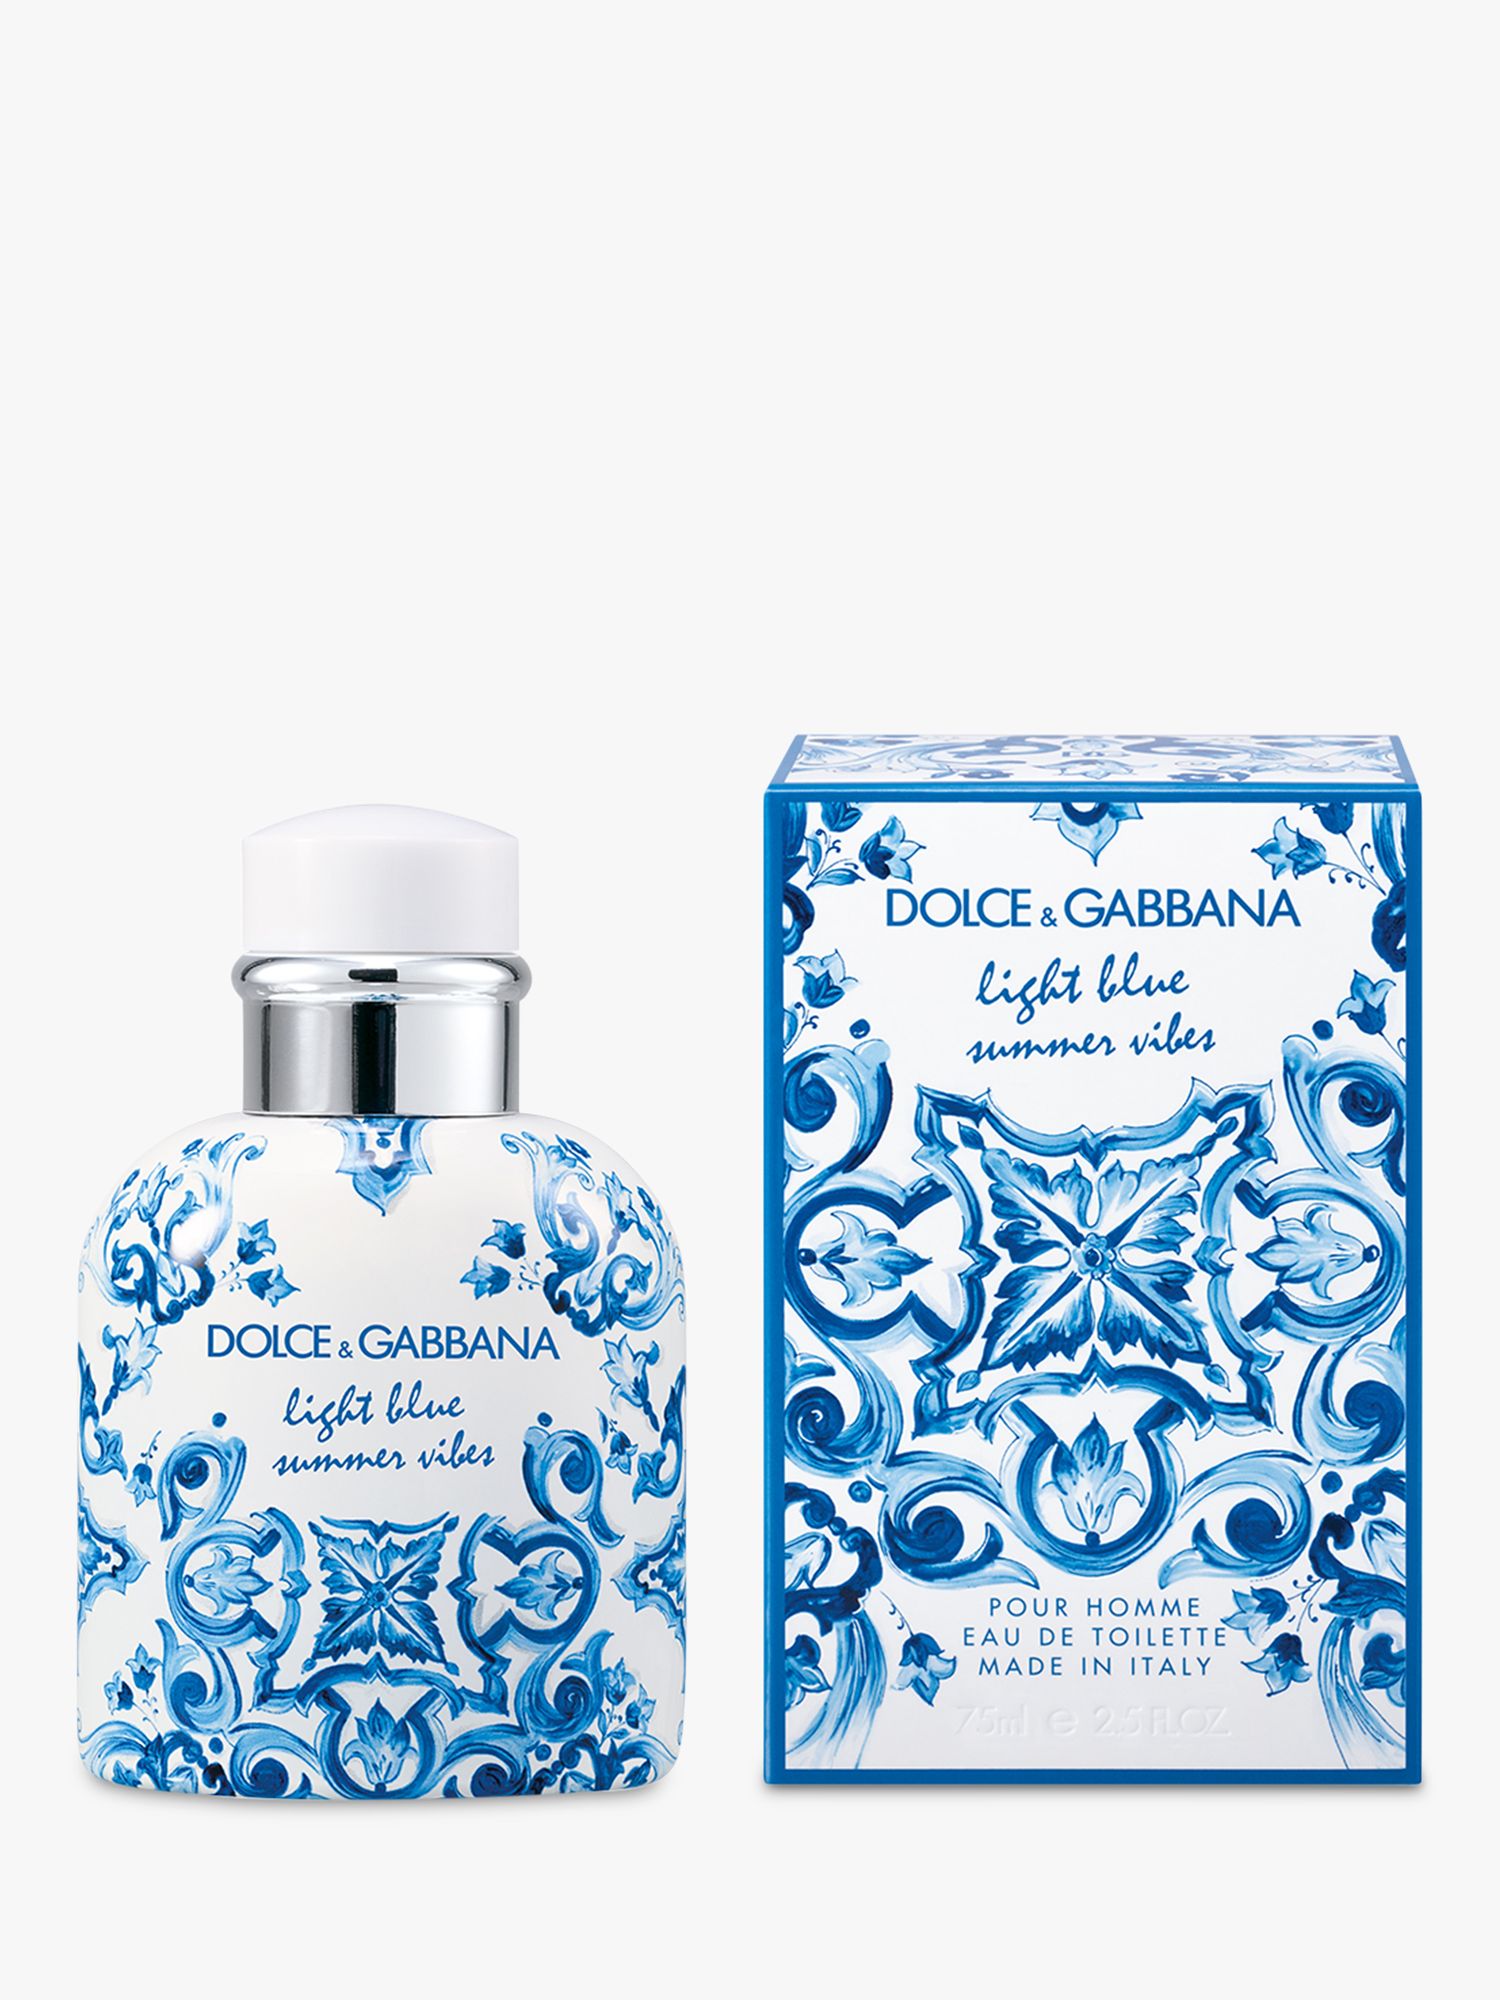 Dolce & Gabbana Light Blue Summer Vibes Pour Homme Eau de Toilette, 75ml 2